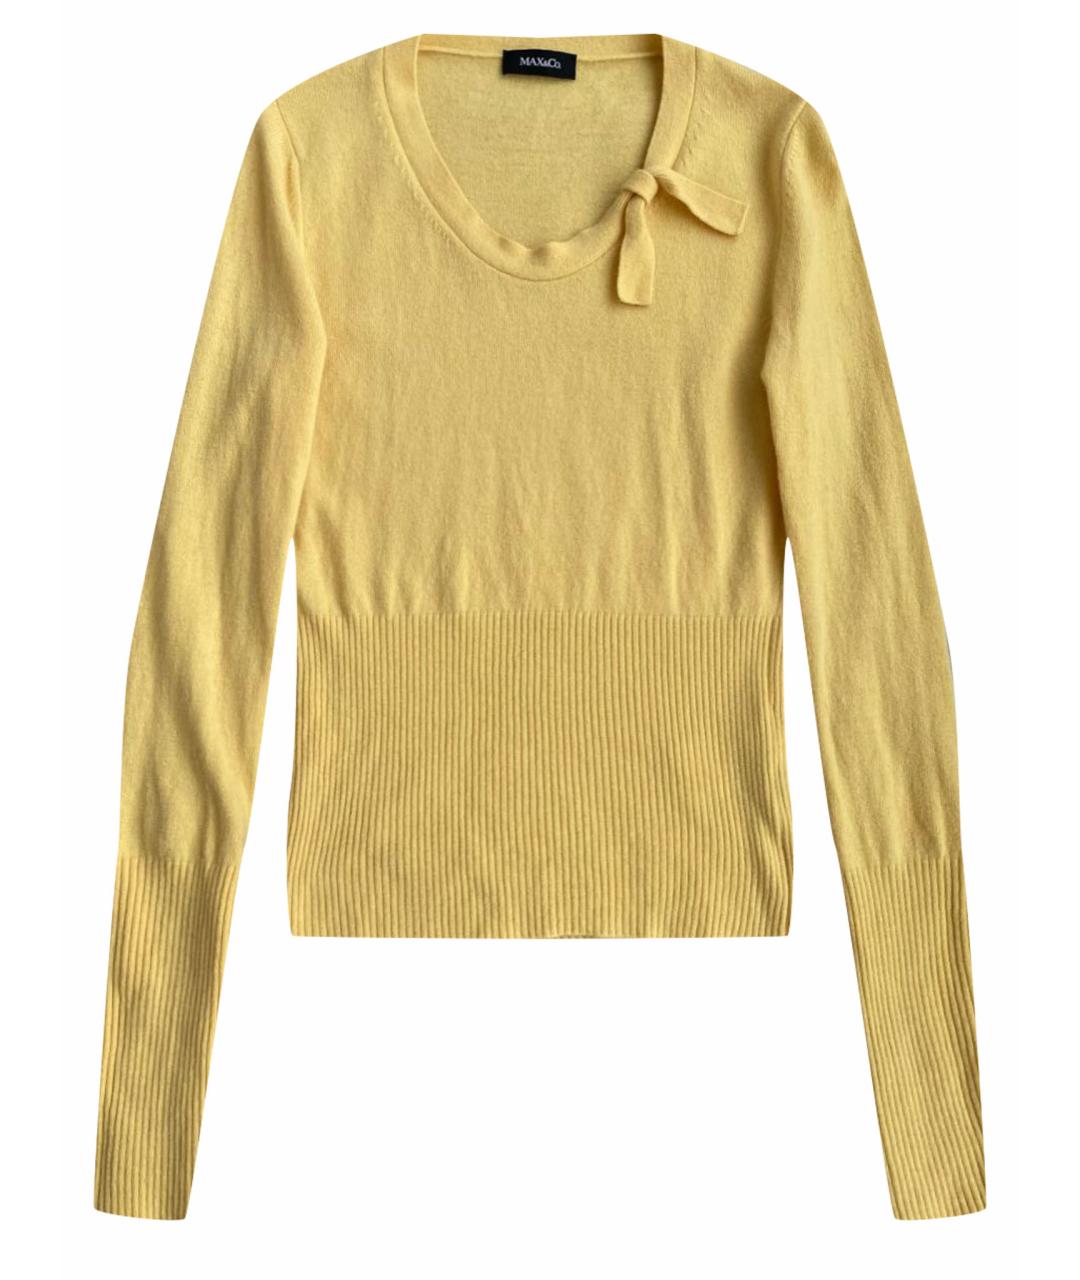 MAX&CO Желтый шерстяной джемпер / свитер, фото 1